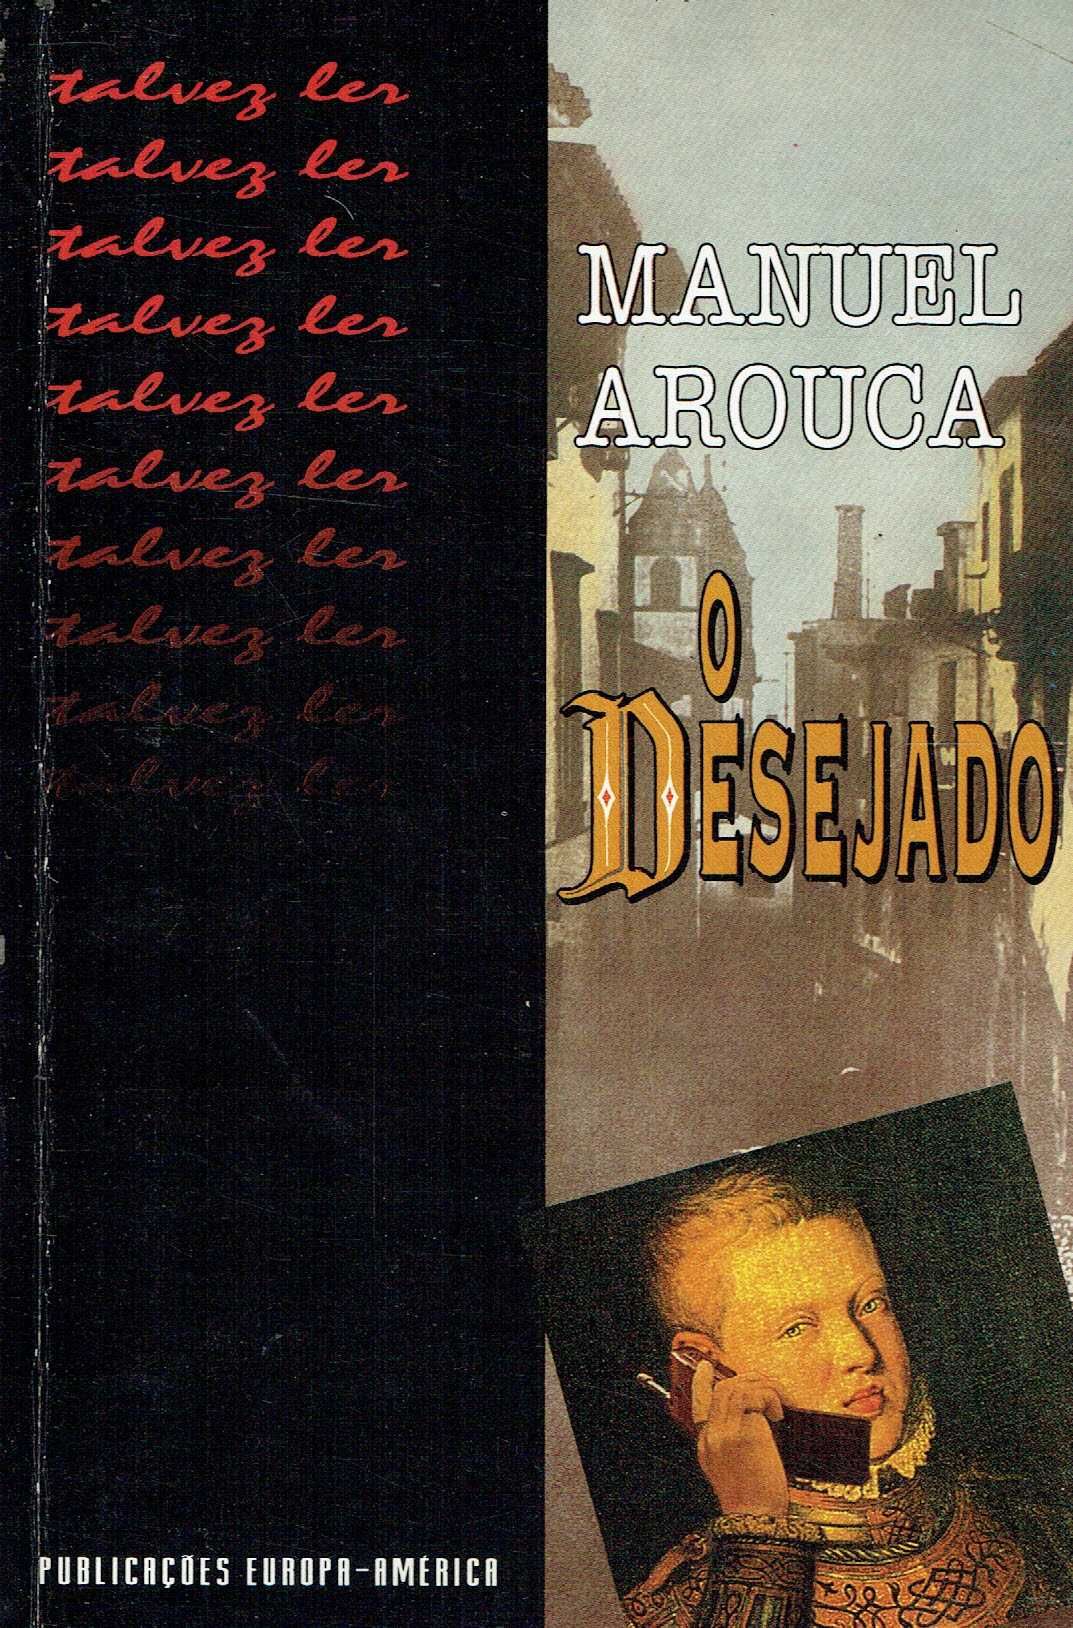 3352 - Literatura - Livros de Manuel Arouca (Vários)